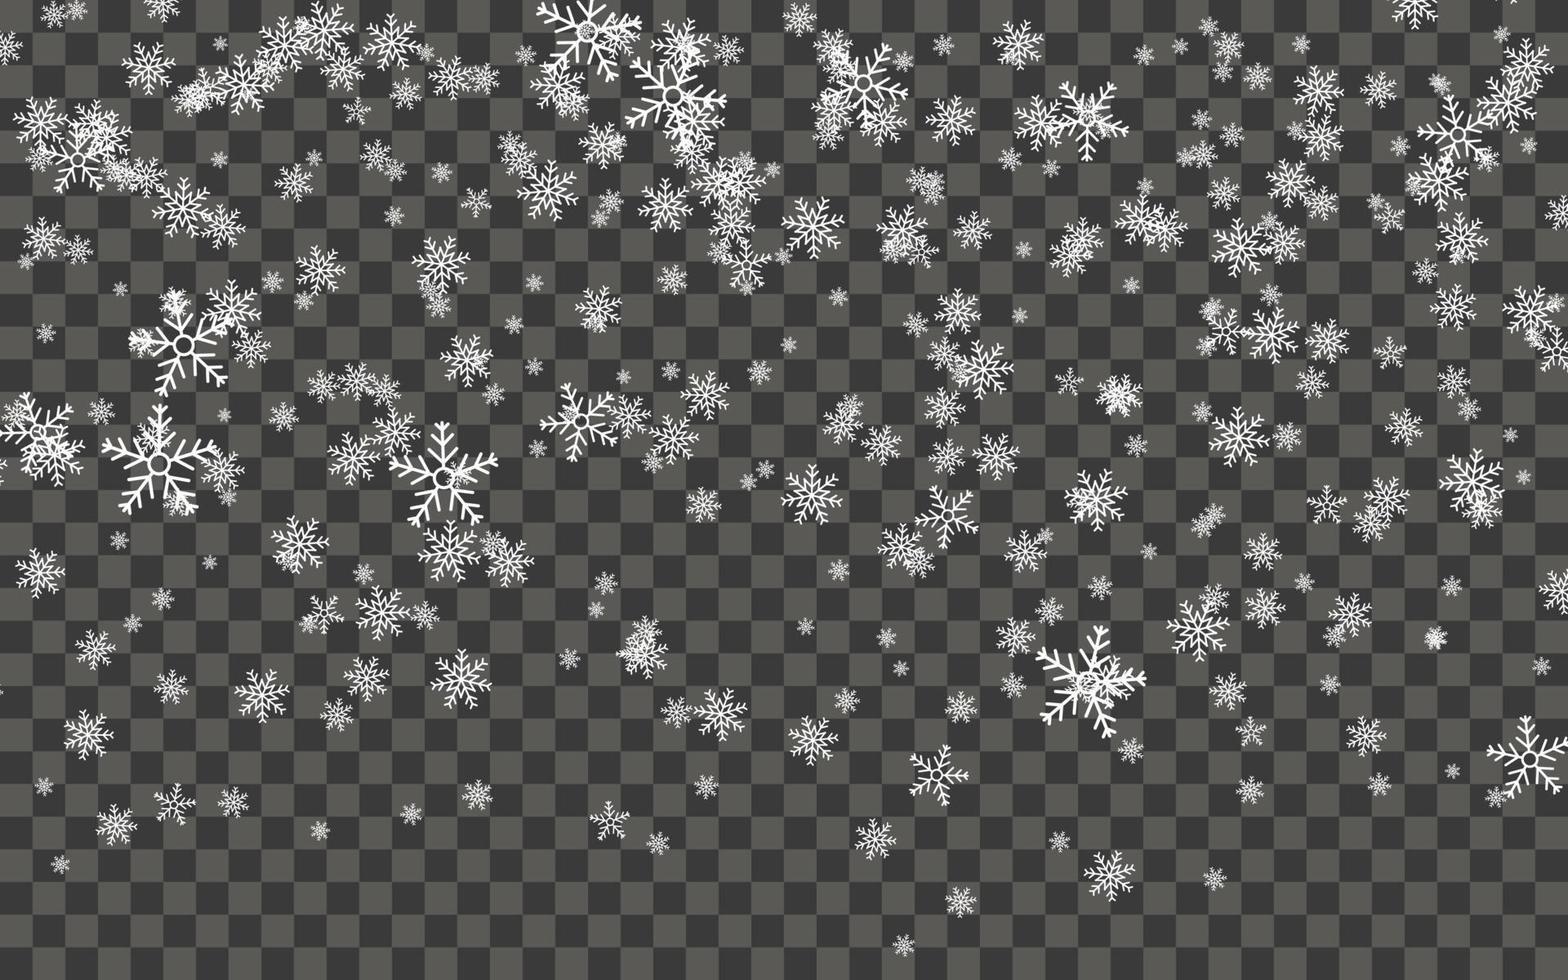 nevadas y copos de nieve que caen sobre un fondo transparente oscuro. copos de nieve blancos y nieve navideña. ilustración vectorial vector